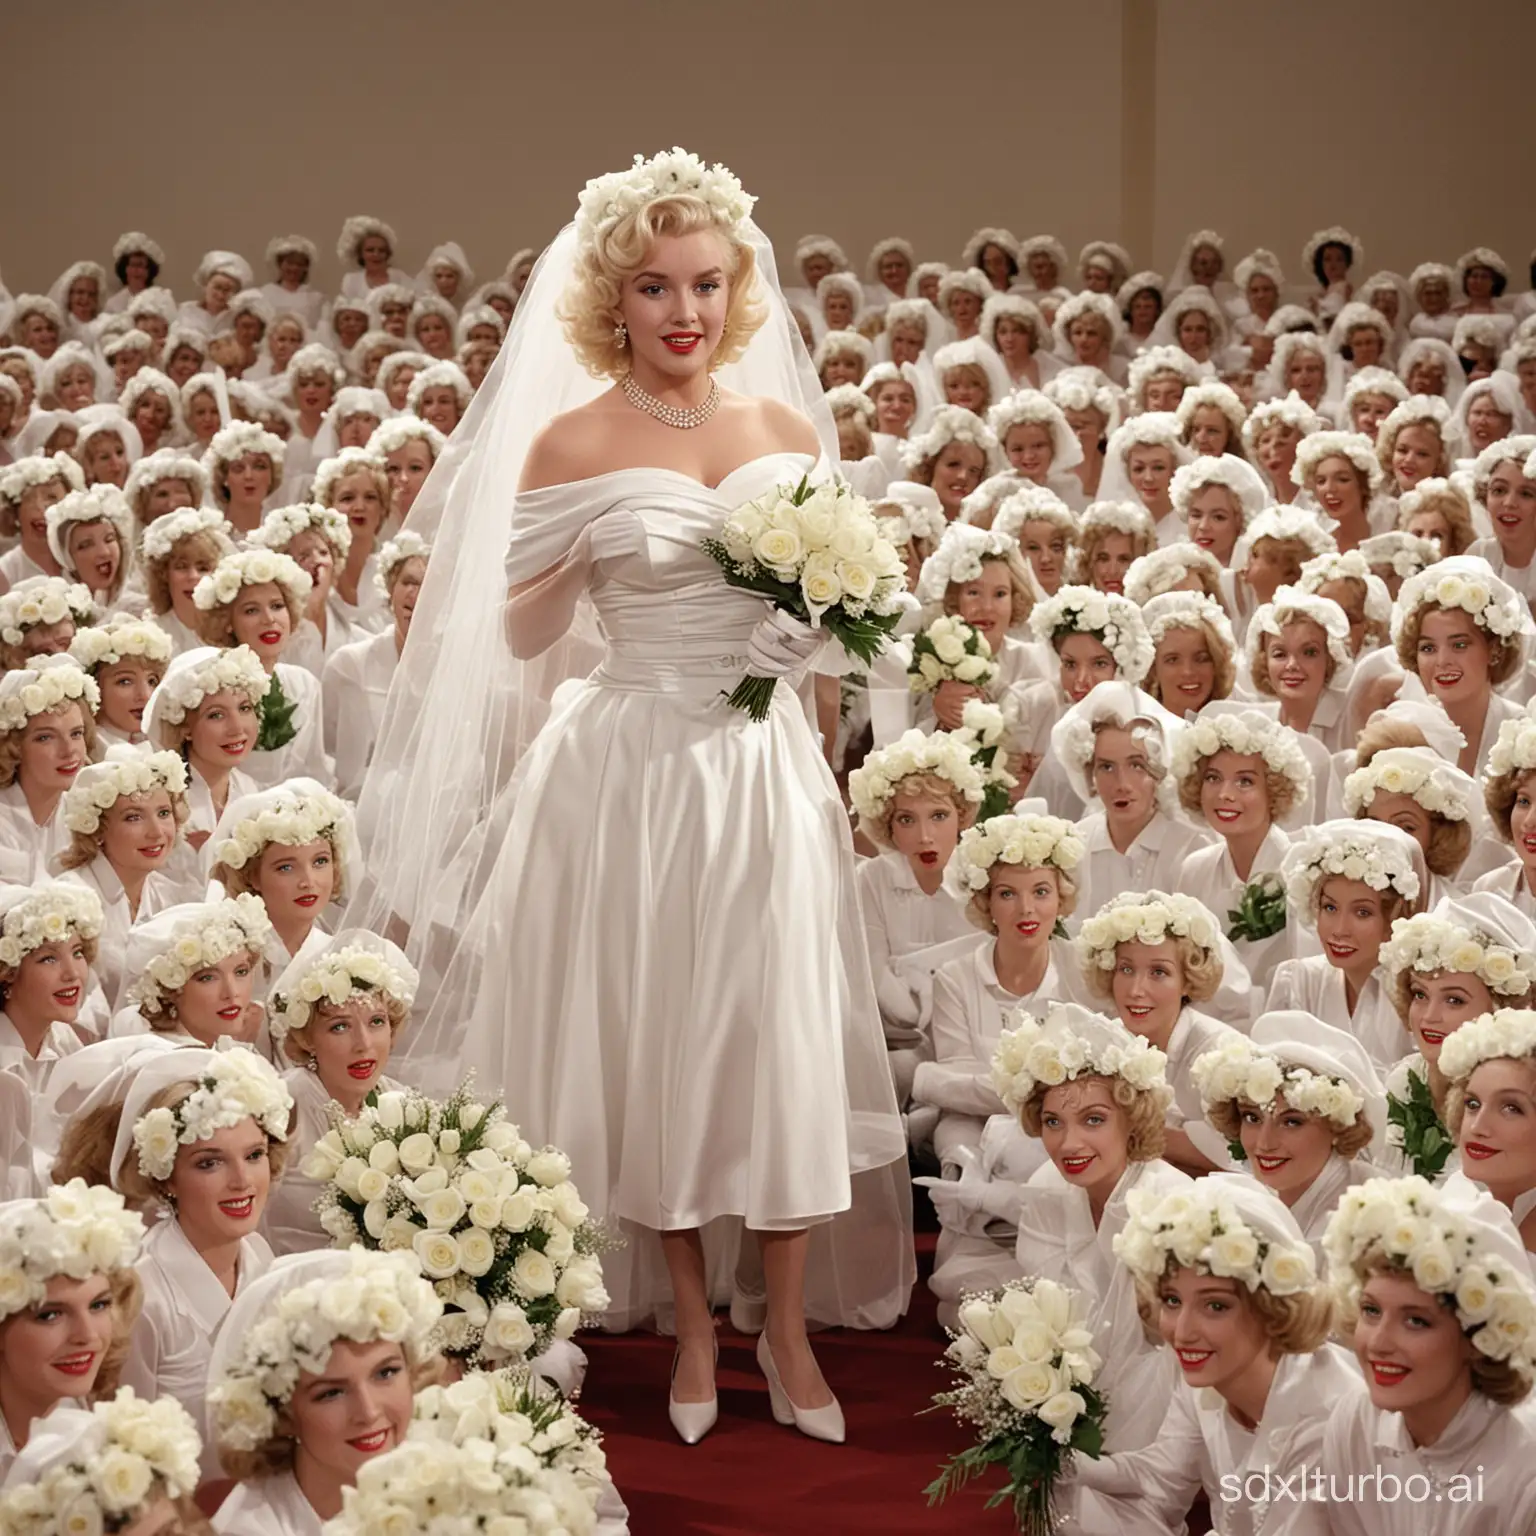 Marilyn Monroe vestida de noiva de véu e grinalda com luva branca dando palestra no auditório lotado de Marilyn Monroe e suas clones vestidas de noivas de véu e grinalda com luva branca e buquê de flores